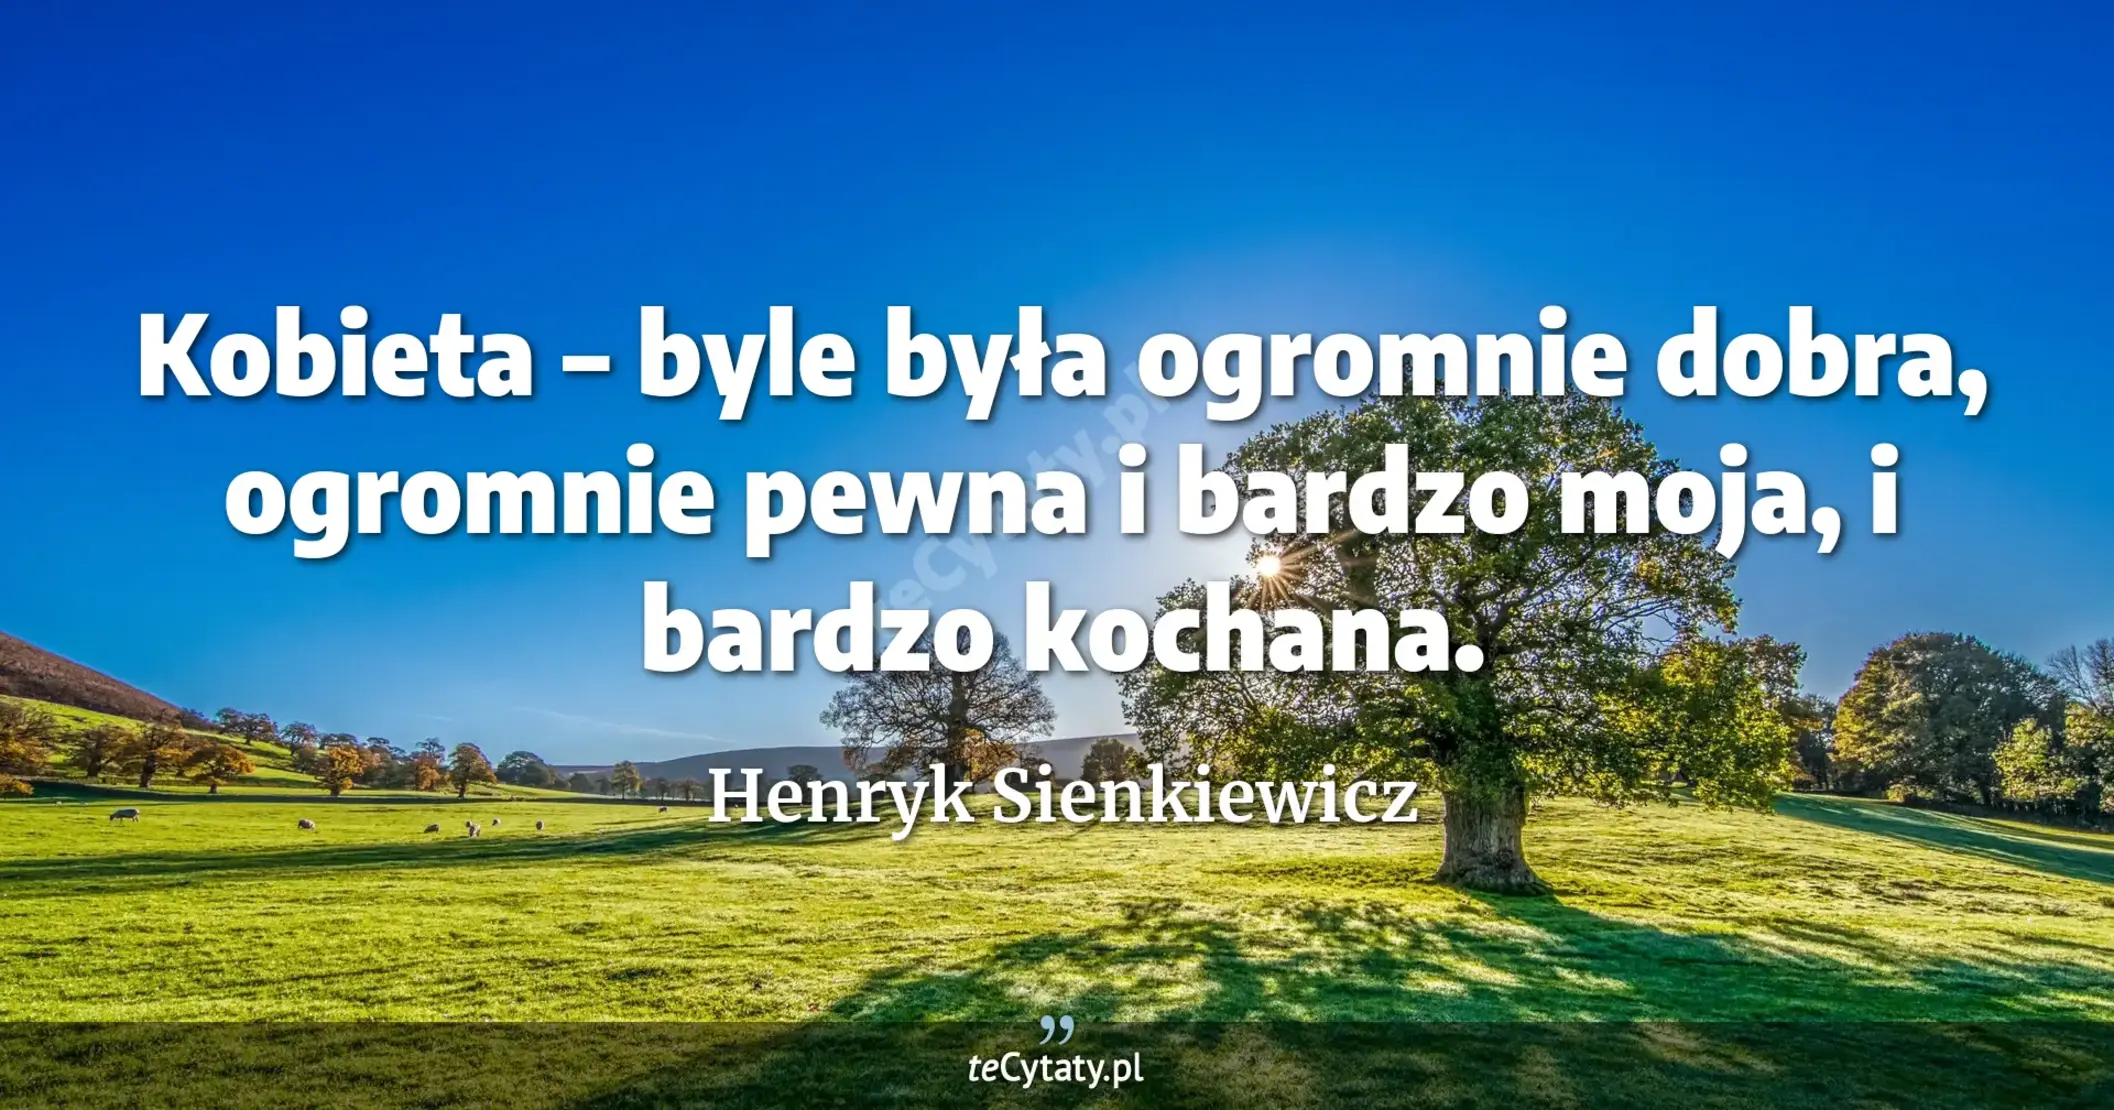 Kobieta – byle była ogromnie dobra, ogromnie pewna i bardzo moja, i bardzo kochana. - Henryk Sienkiewicz